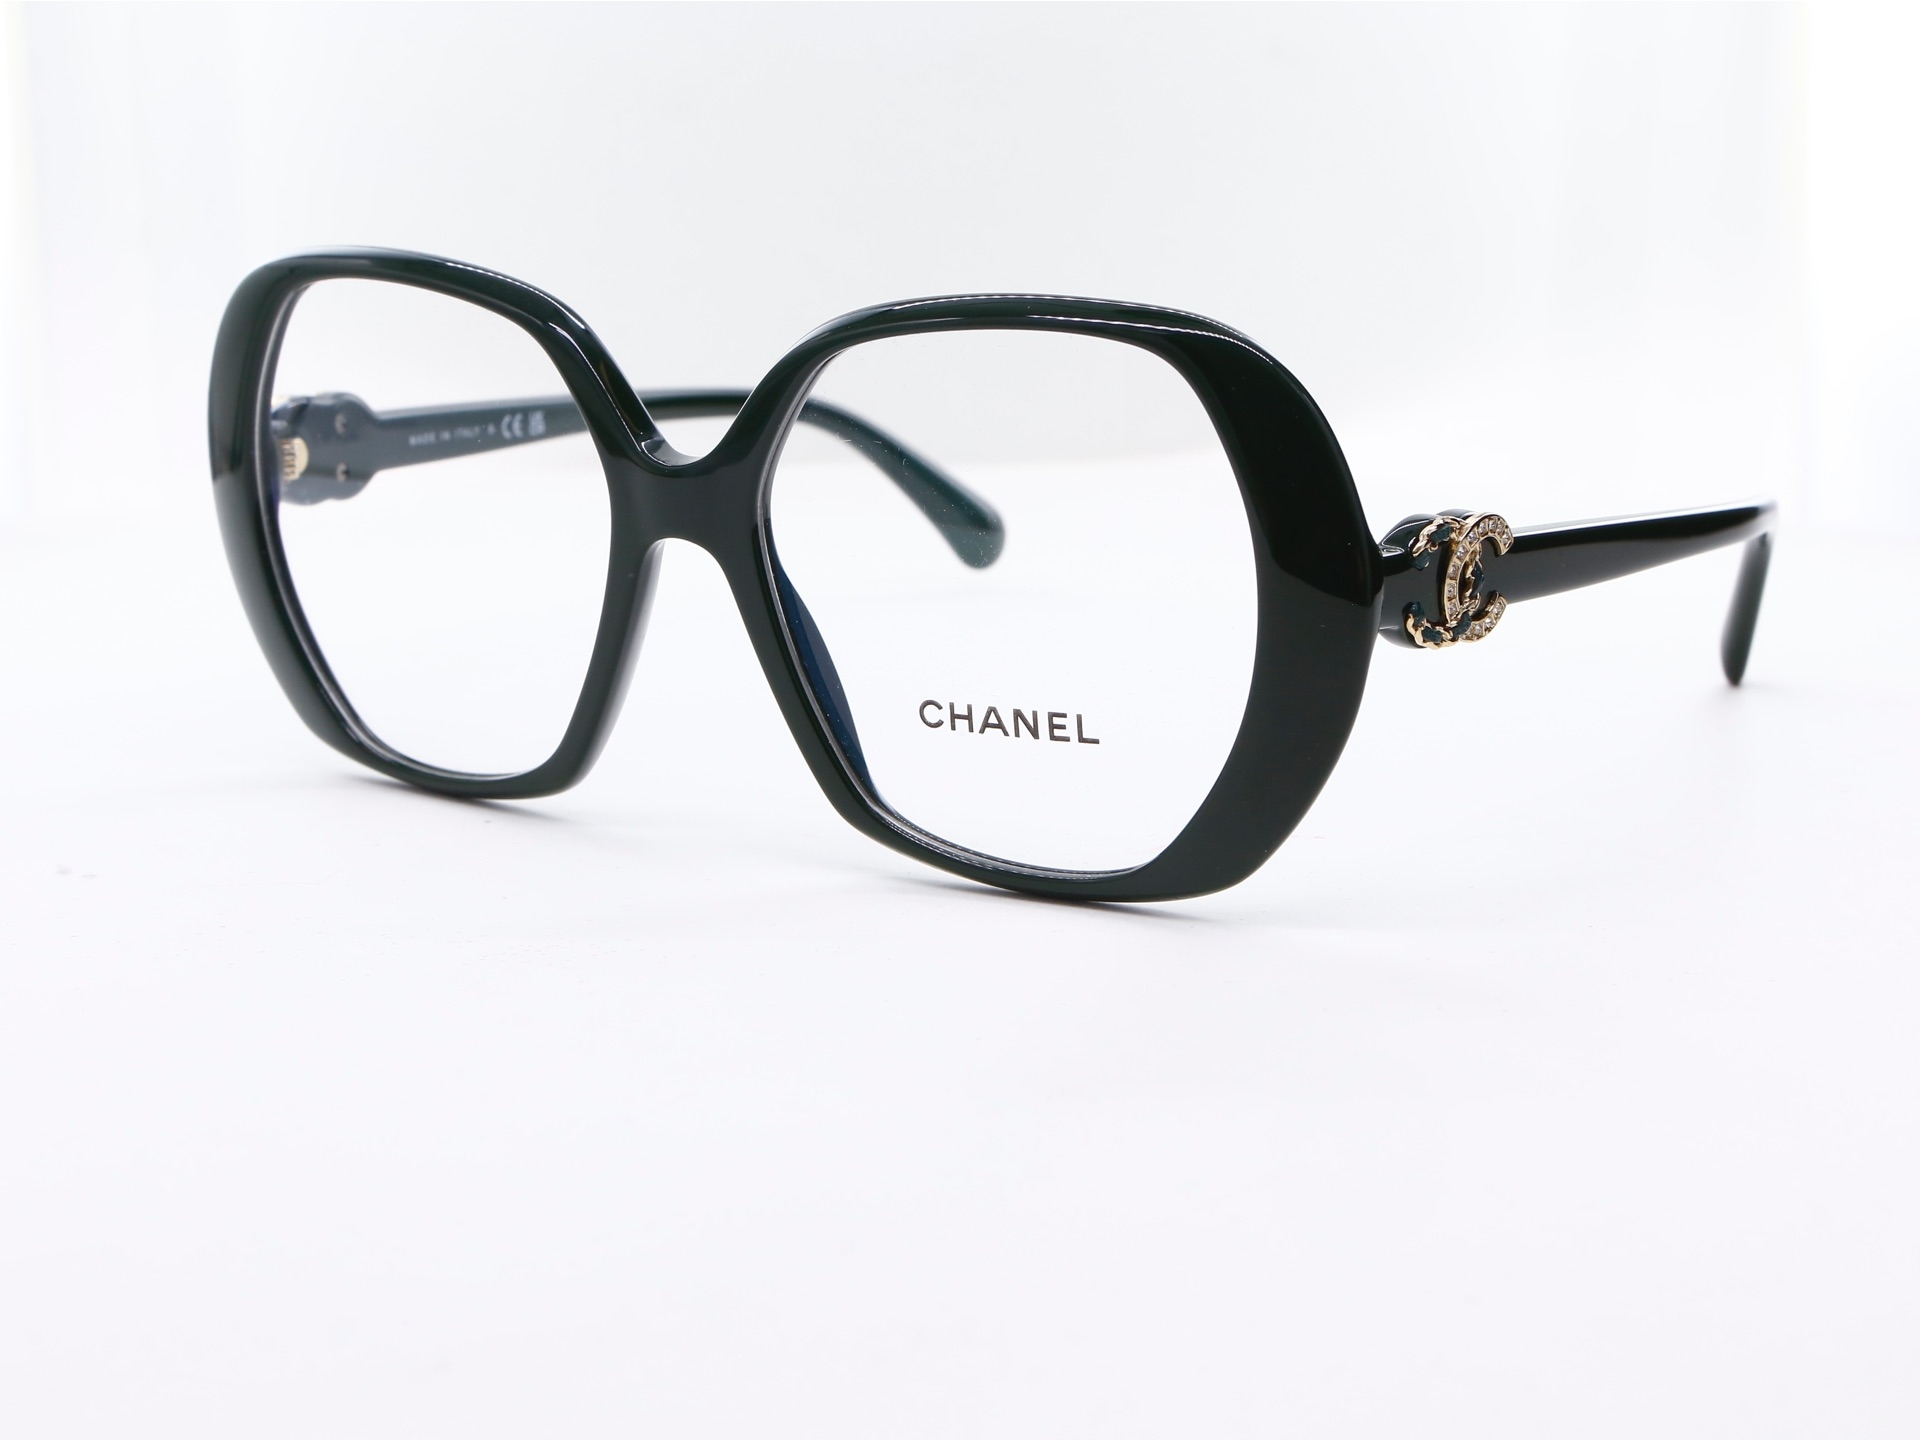 Chanel - ref: 87365